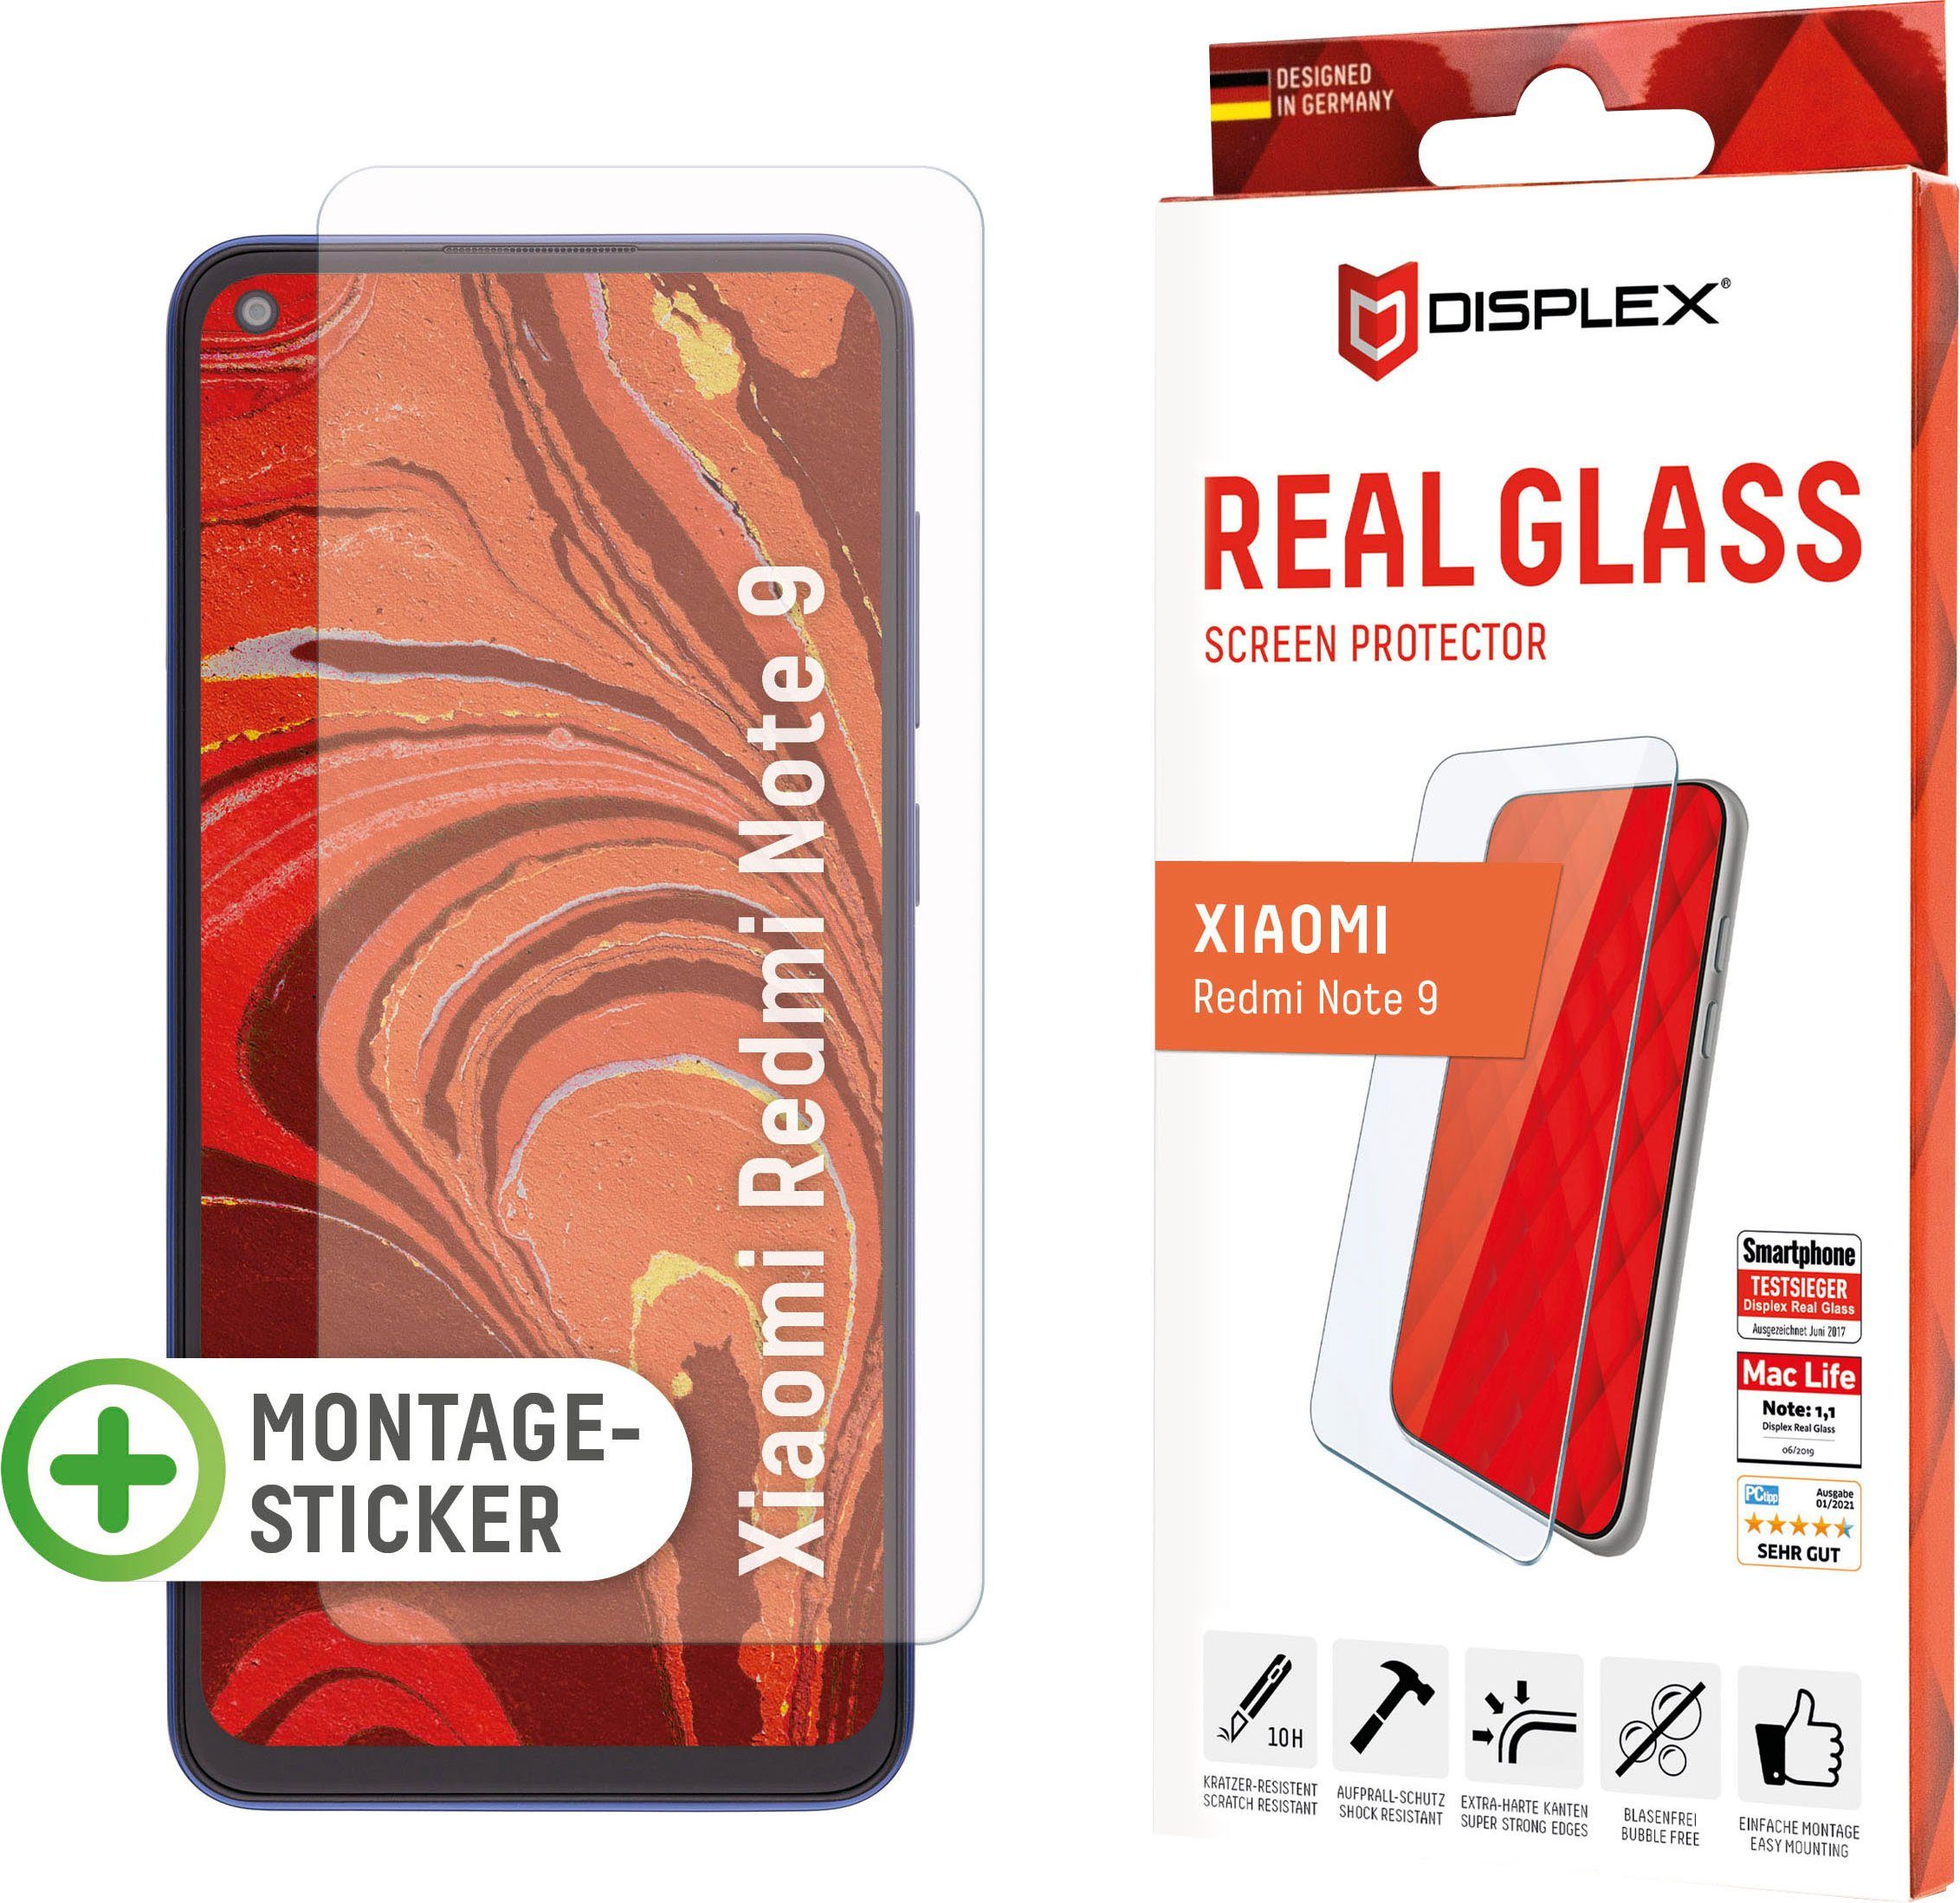 Displex »DISPLEX Real Glass Panzerglas für Xiaomi Redmi Note 9 (6,5), 10H  Tempered Glass, mit Montagesticker, 2D« für Xiaomi Redmi Note 9,  Displayschutzglas, 1 Stück online kaufen | OTTO